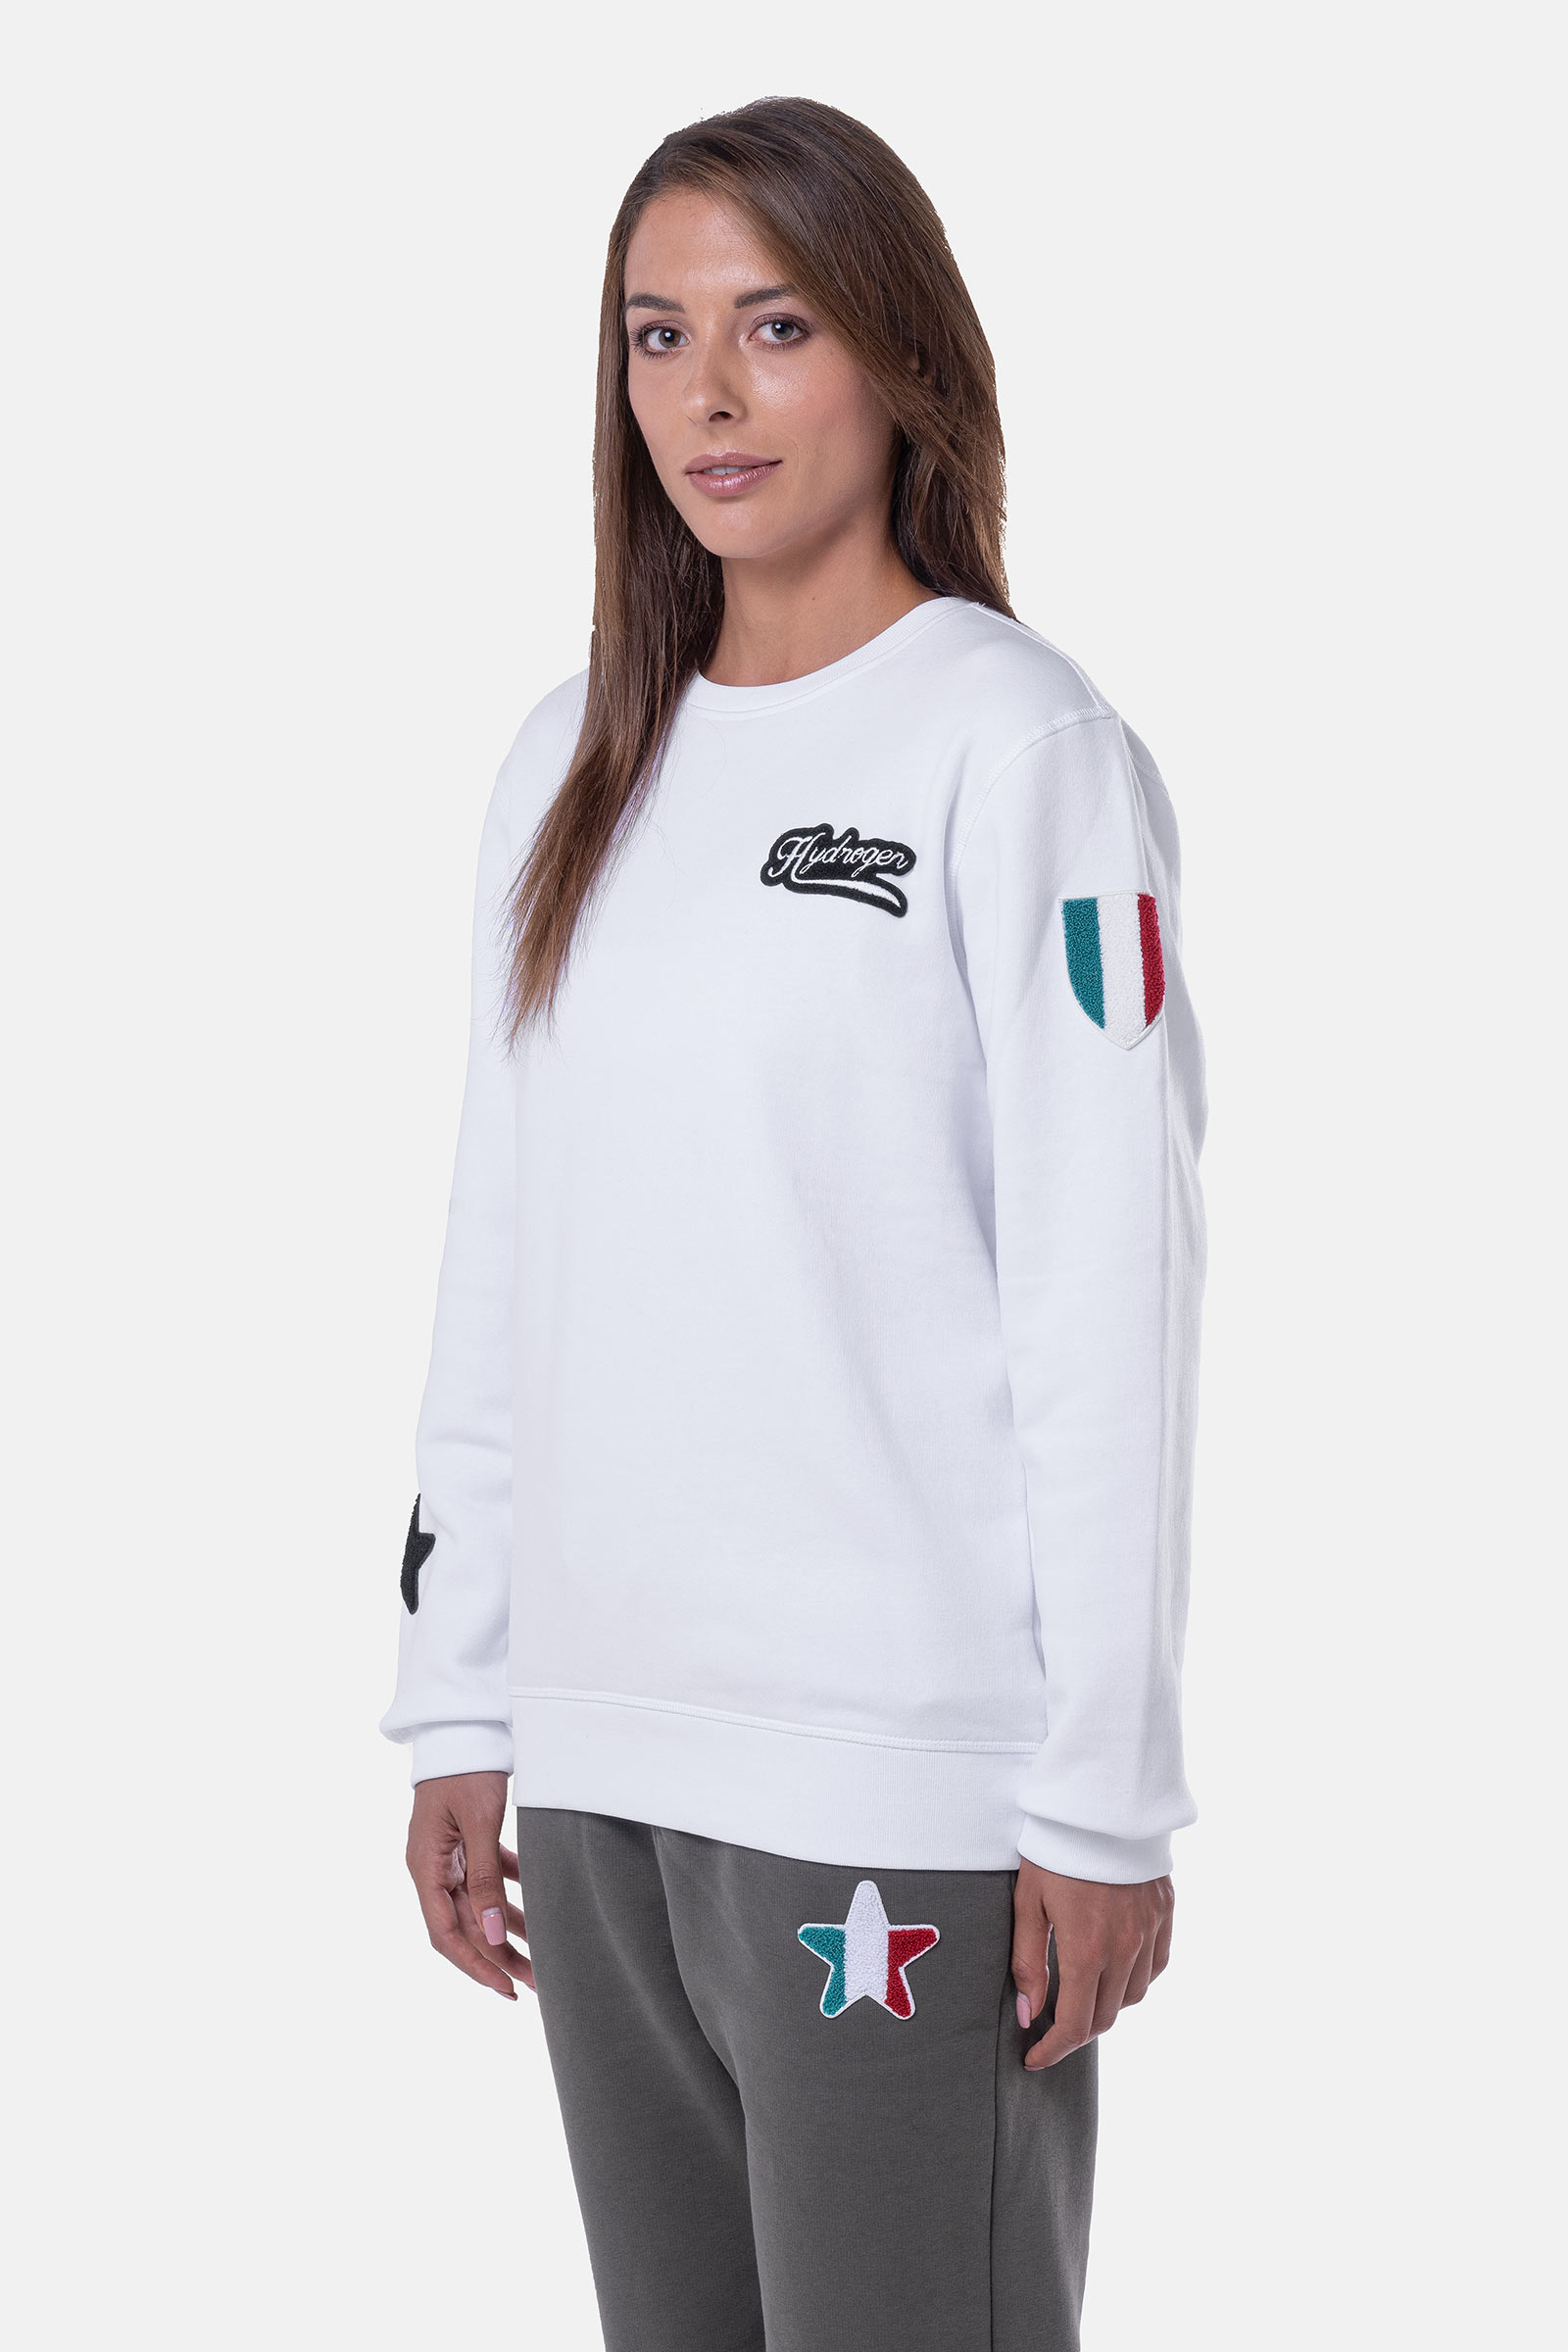 FELPA SCUDO - WHITE - Abbigliamento sportivo | Hydrogen